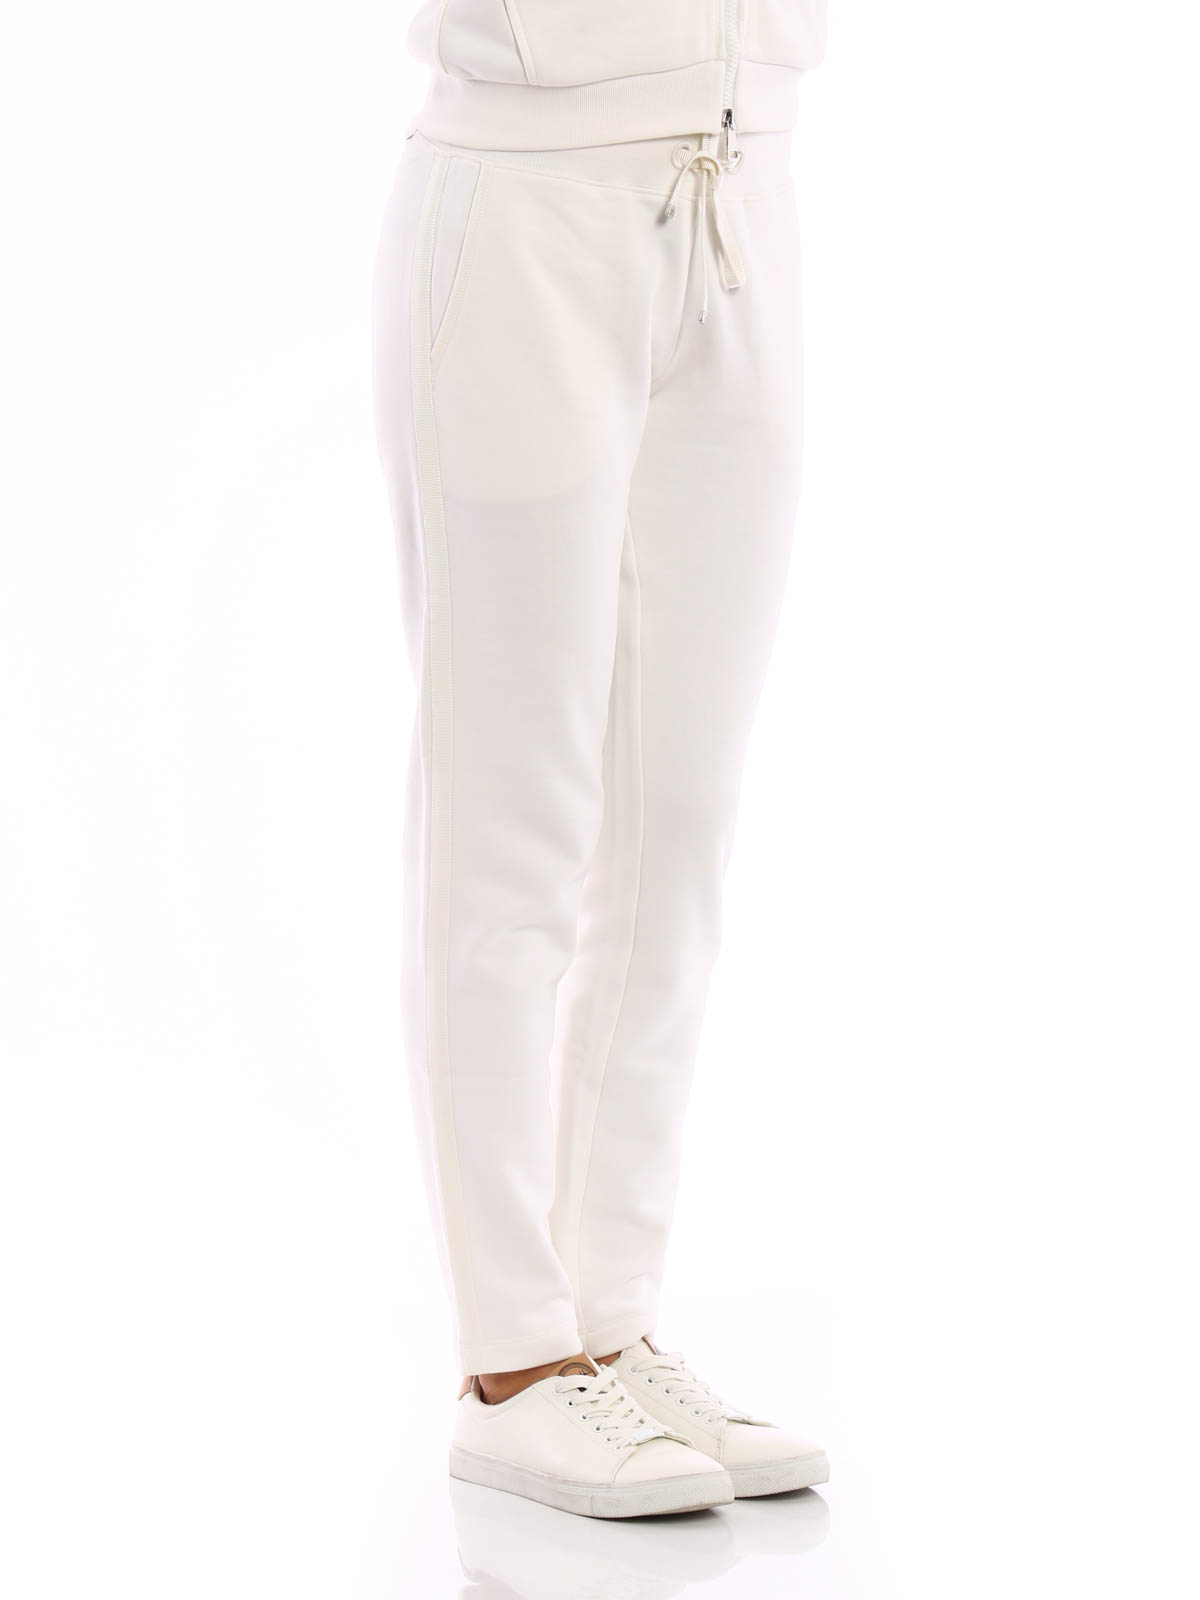 Pantalones deportivos - Chándal Blanco Para Mujer - B1093876860080948034